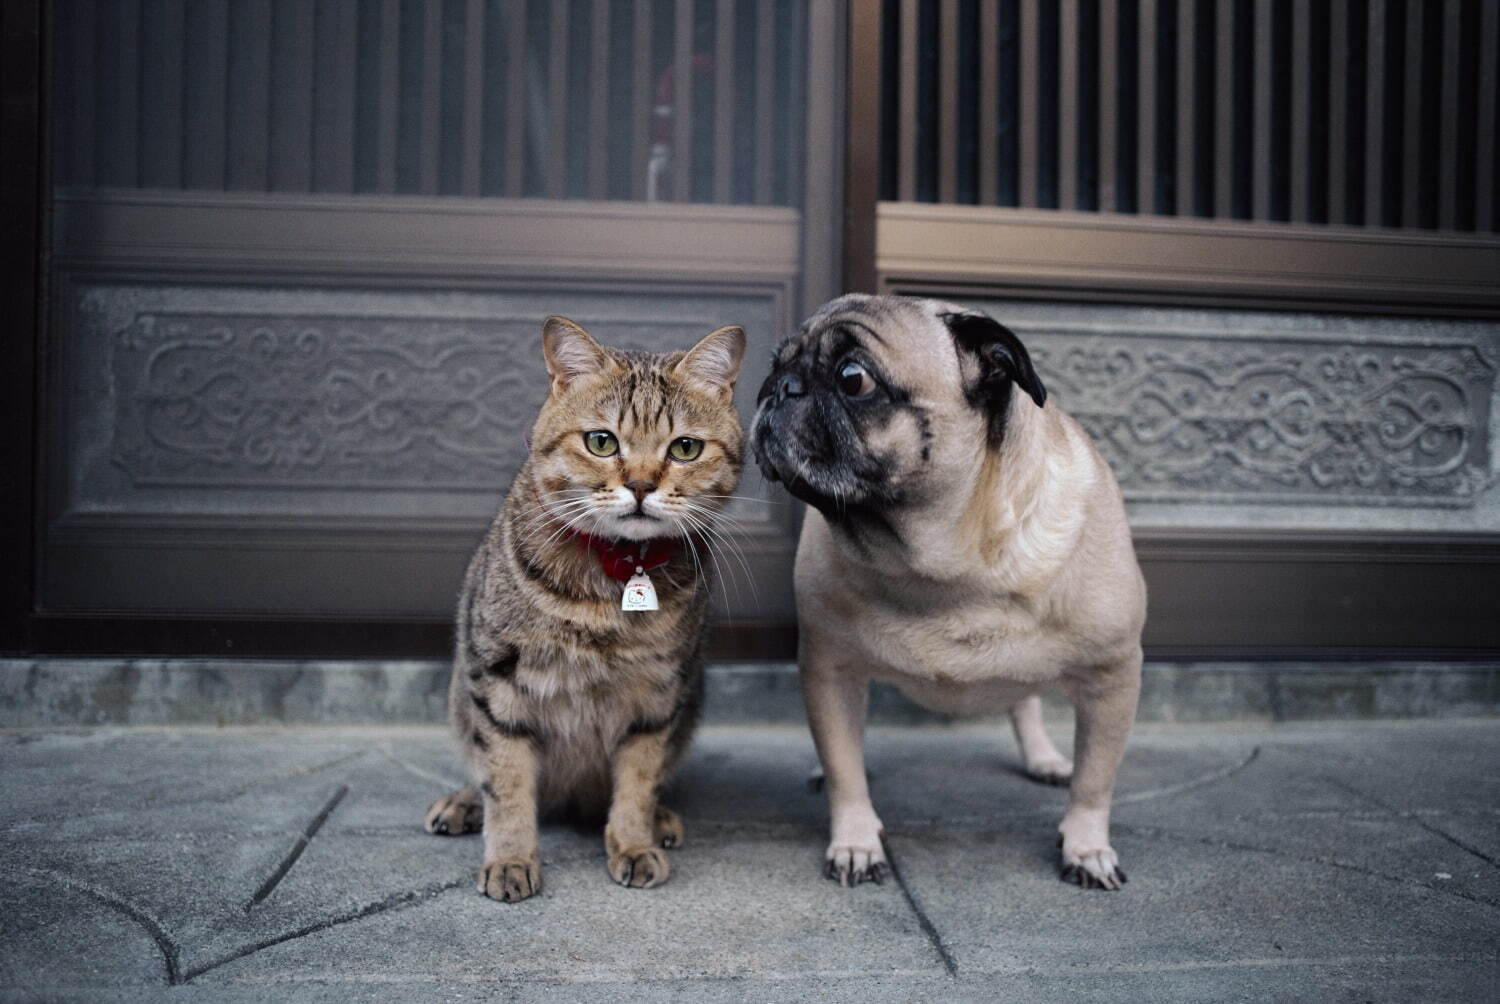 岩合光昭写真展 ねこといぬ 千葉 パレット柏で 仲良しの 犬ねこ コンビ 日本の犬シリーズも ファッションプレス